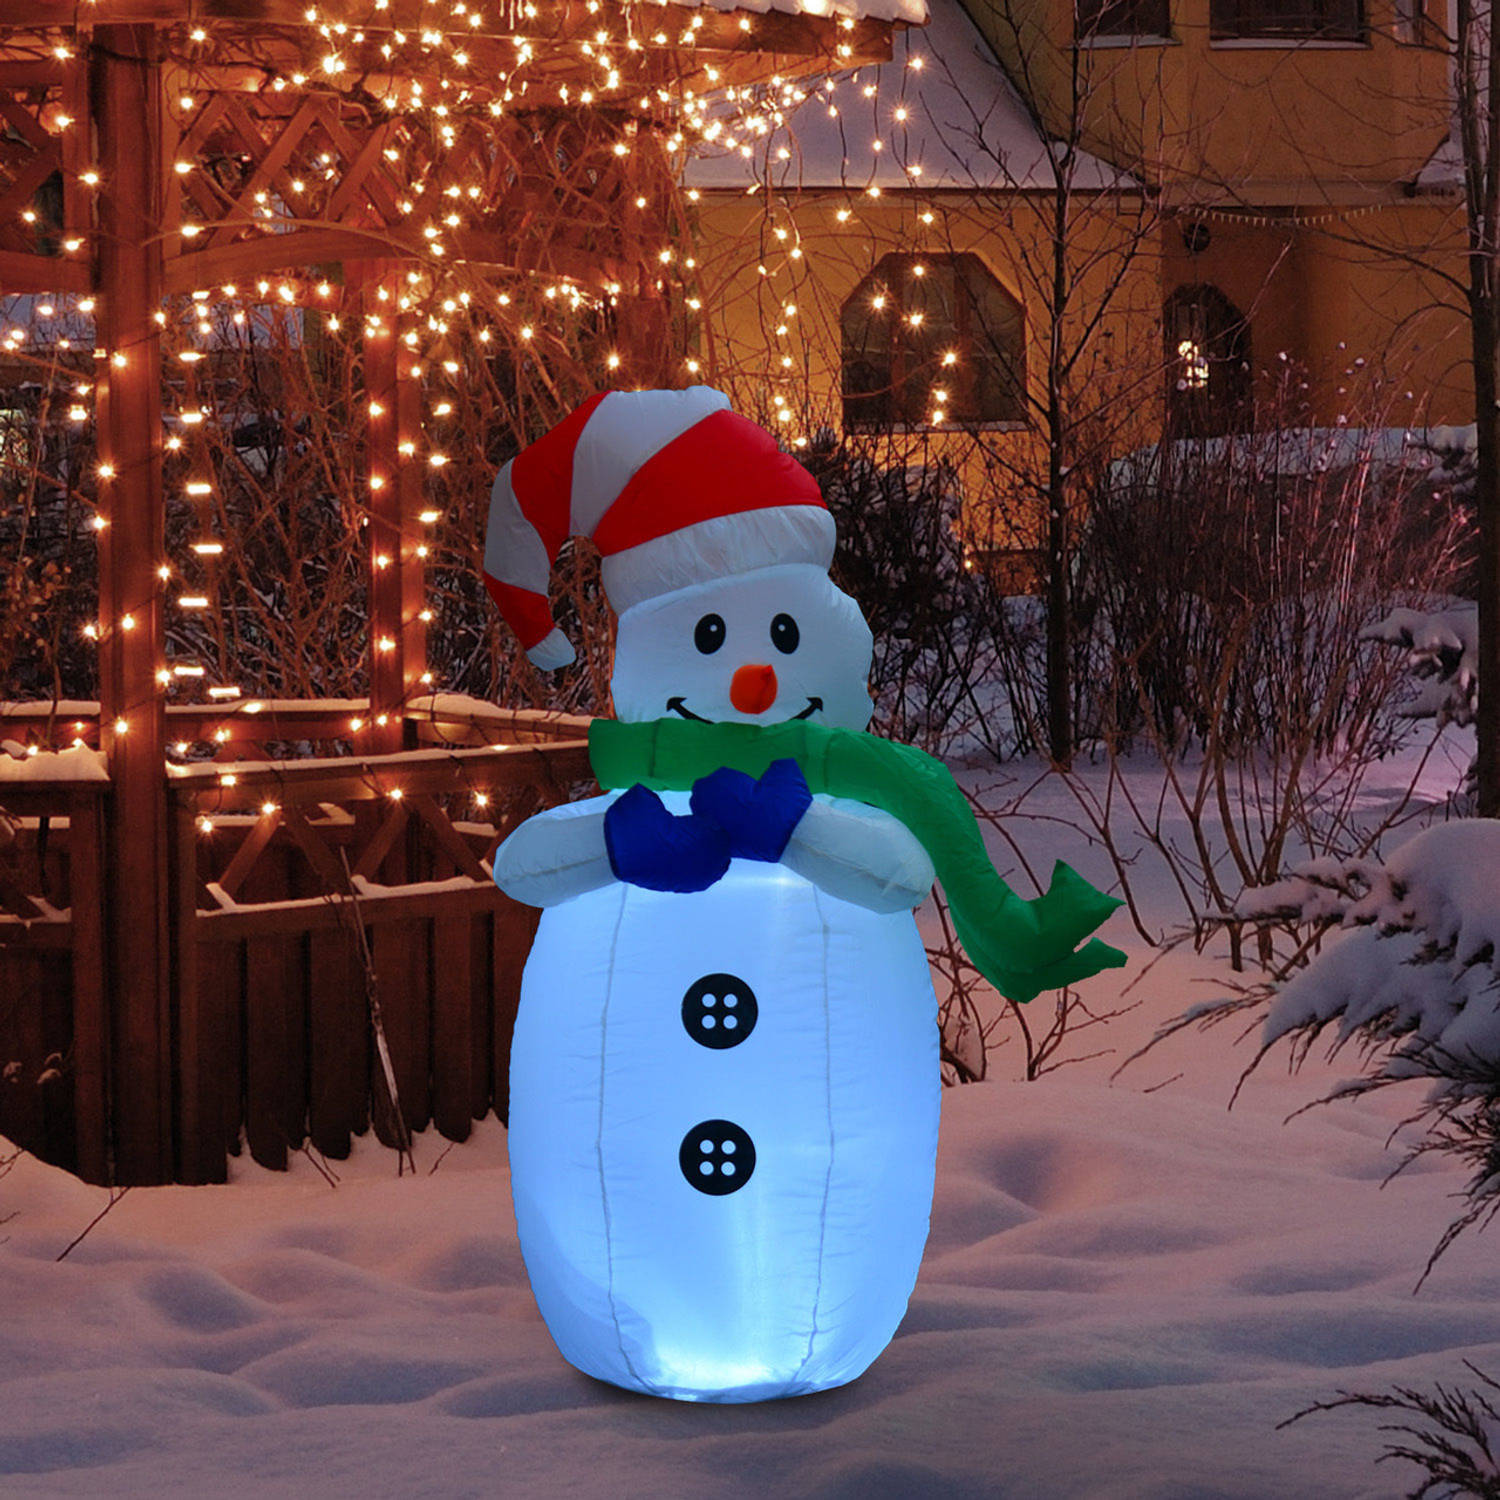 Opblaasbare sneeuwman - Sneeuwman - Sneeuwpop - Kerstversiering - Kerst - Kerstverlichting buiten - Kerstverlichting...